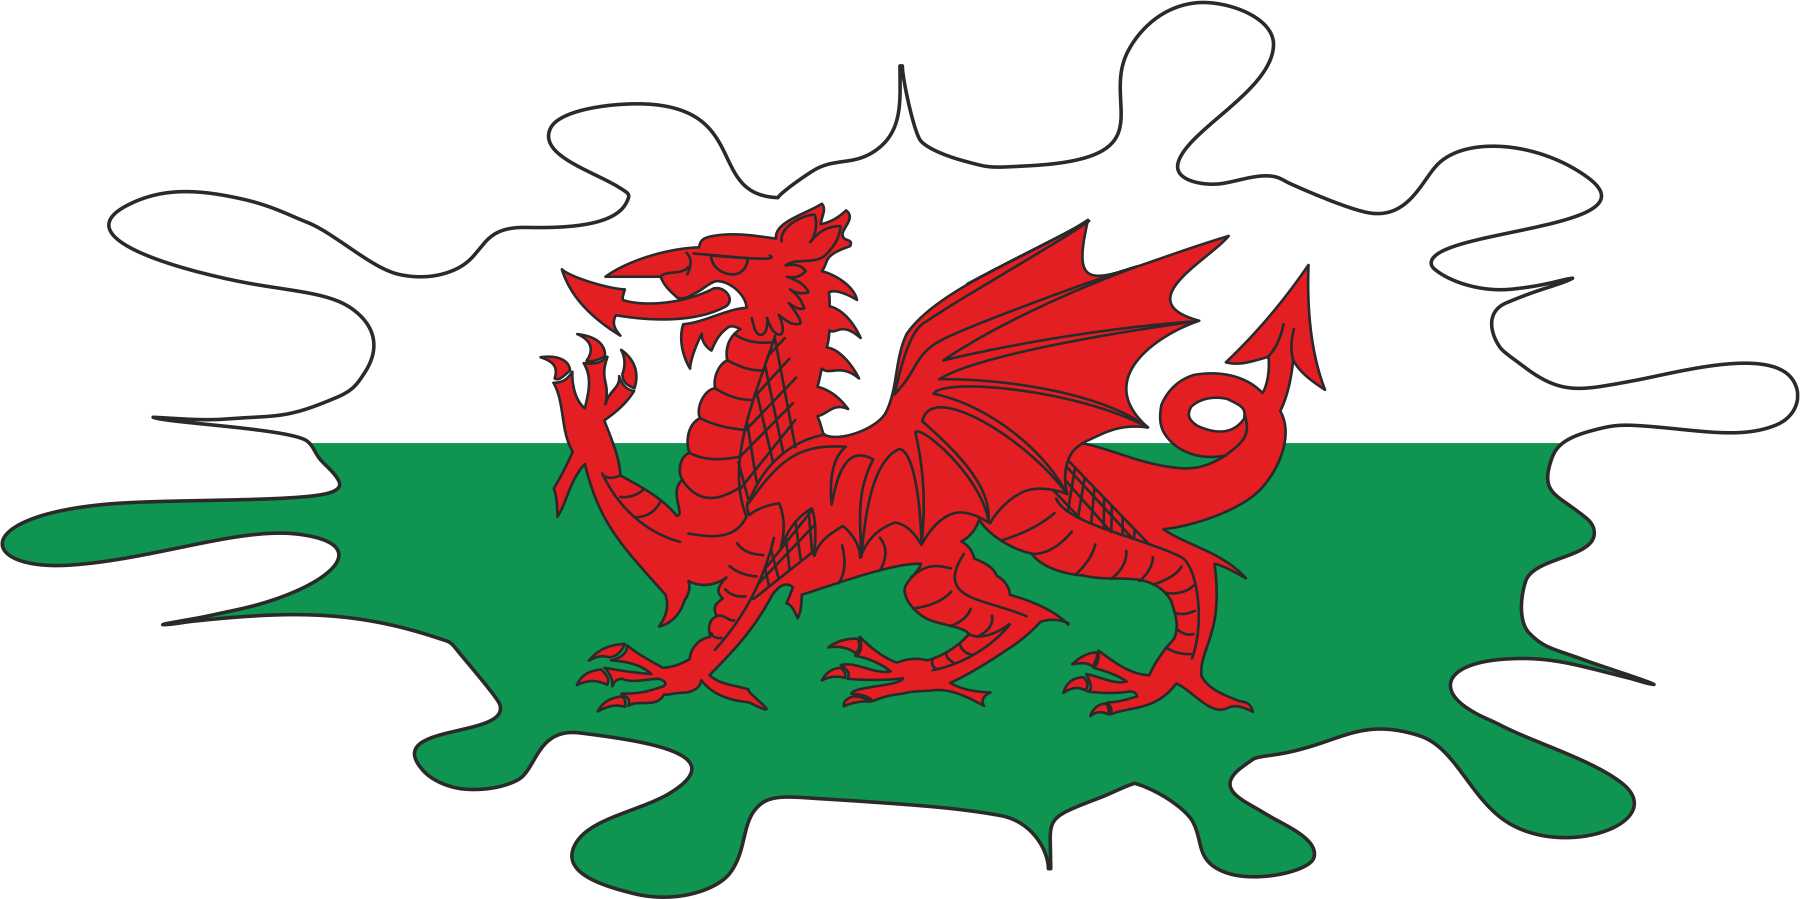 Welsh Flag Splat